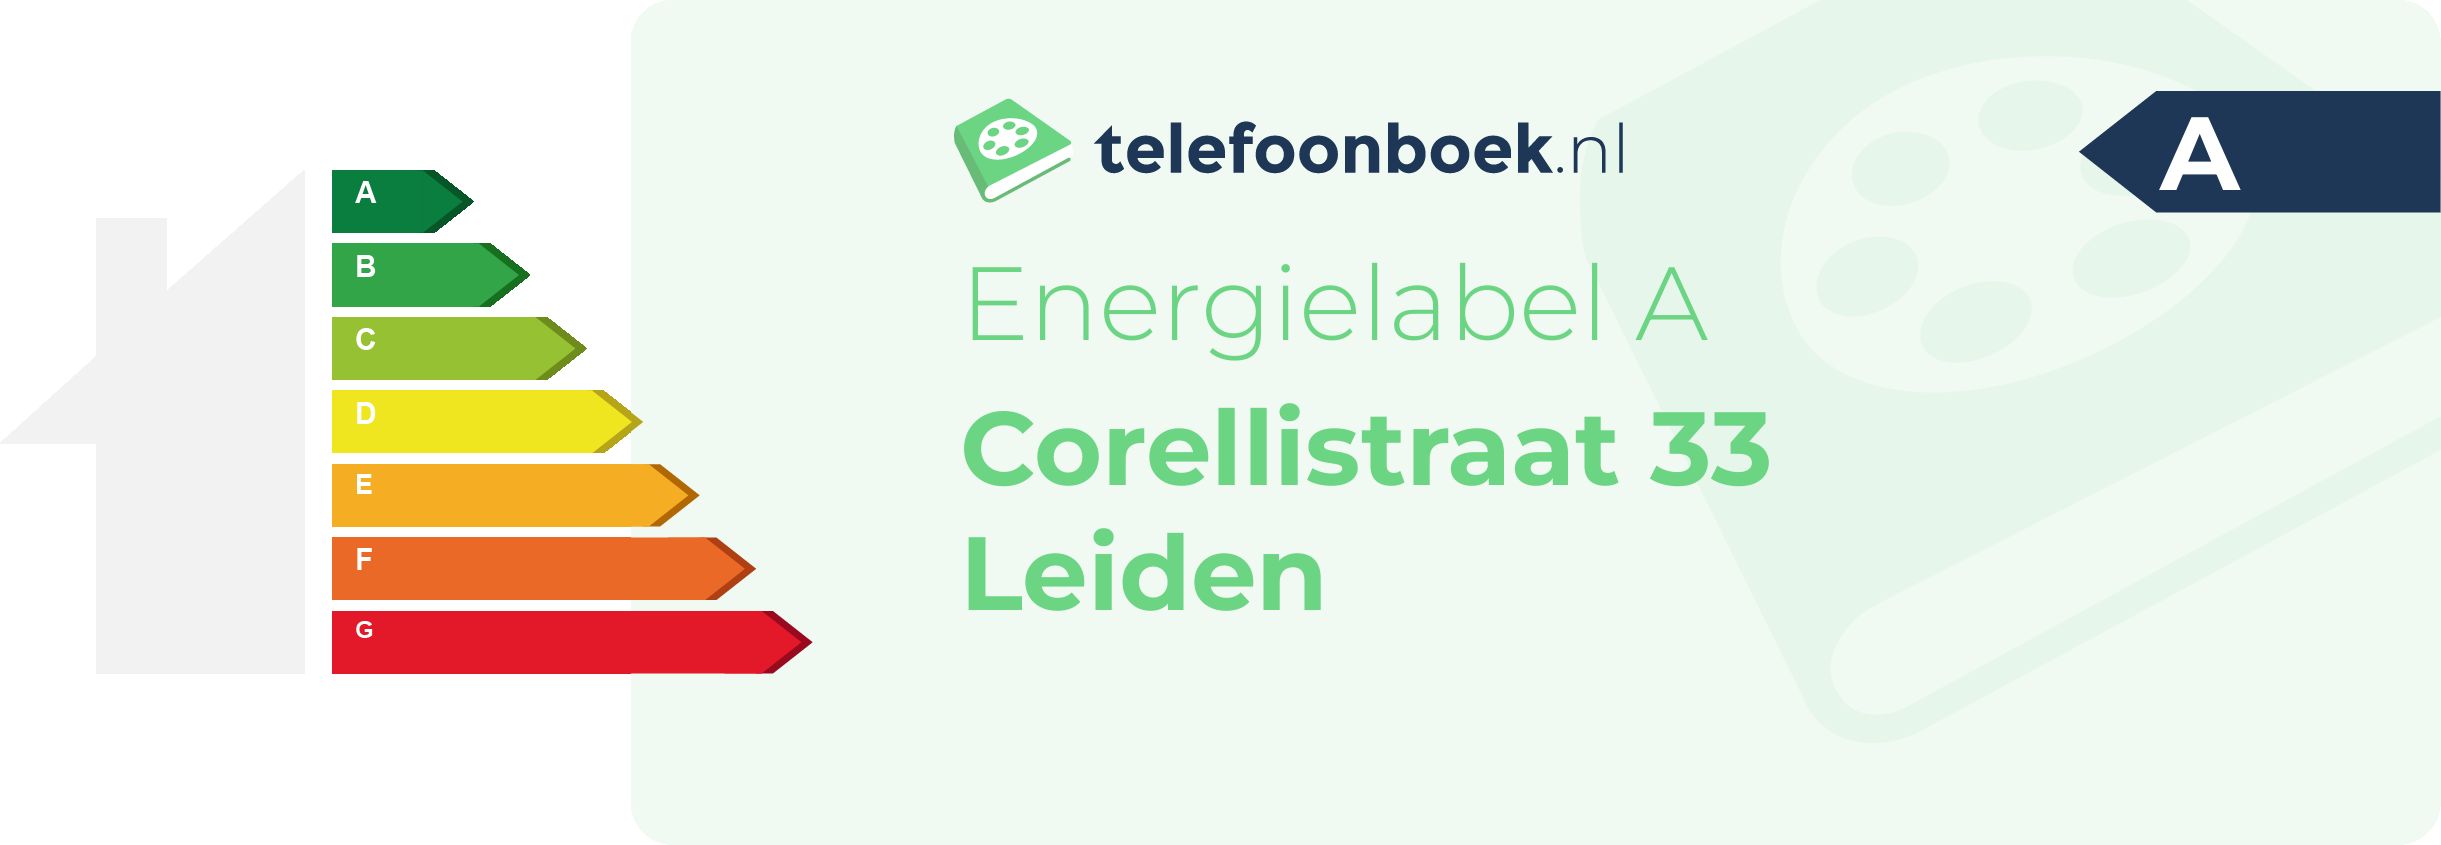 Energielabel Corellistraat 33 Leiden